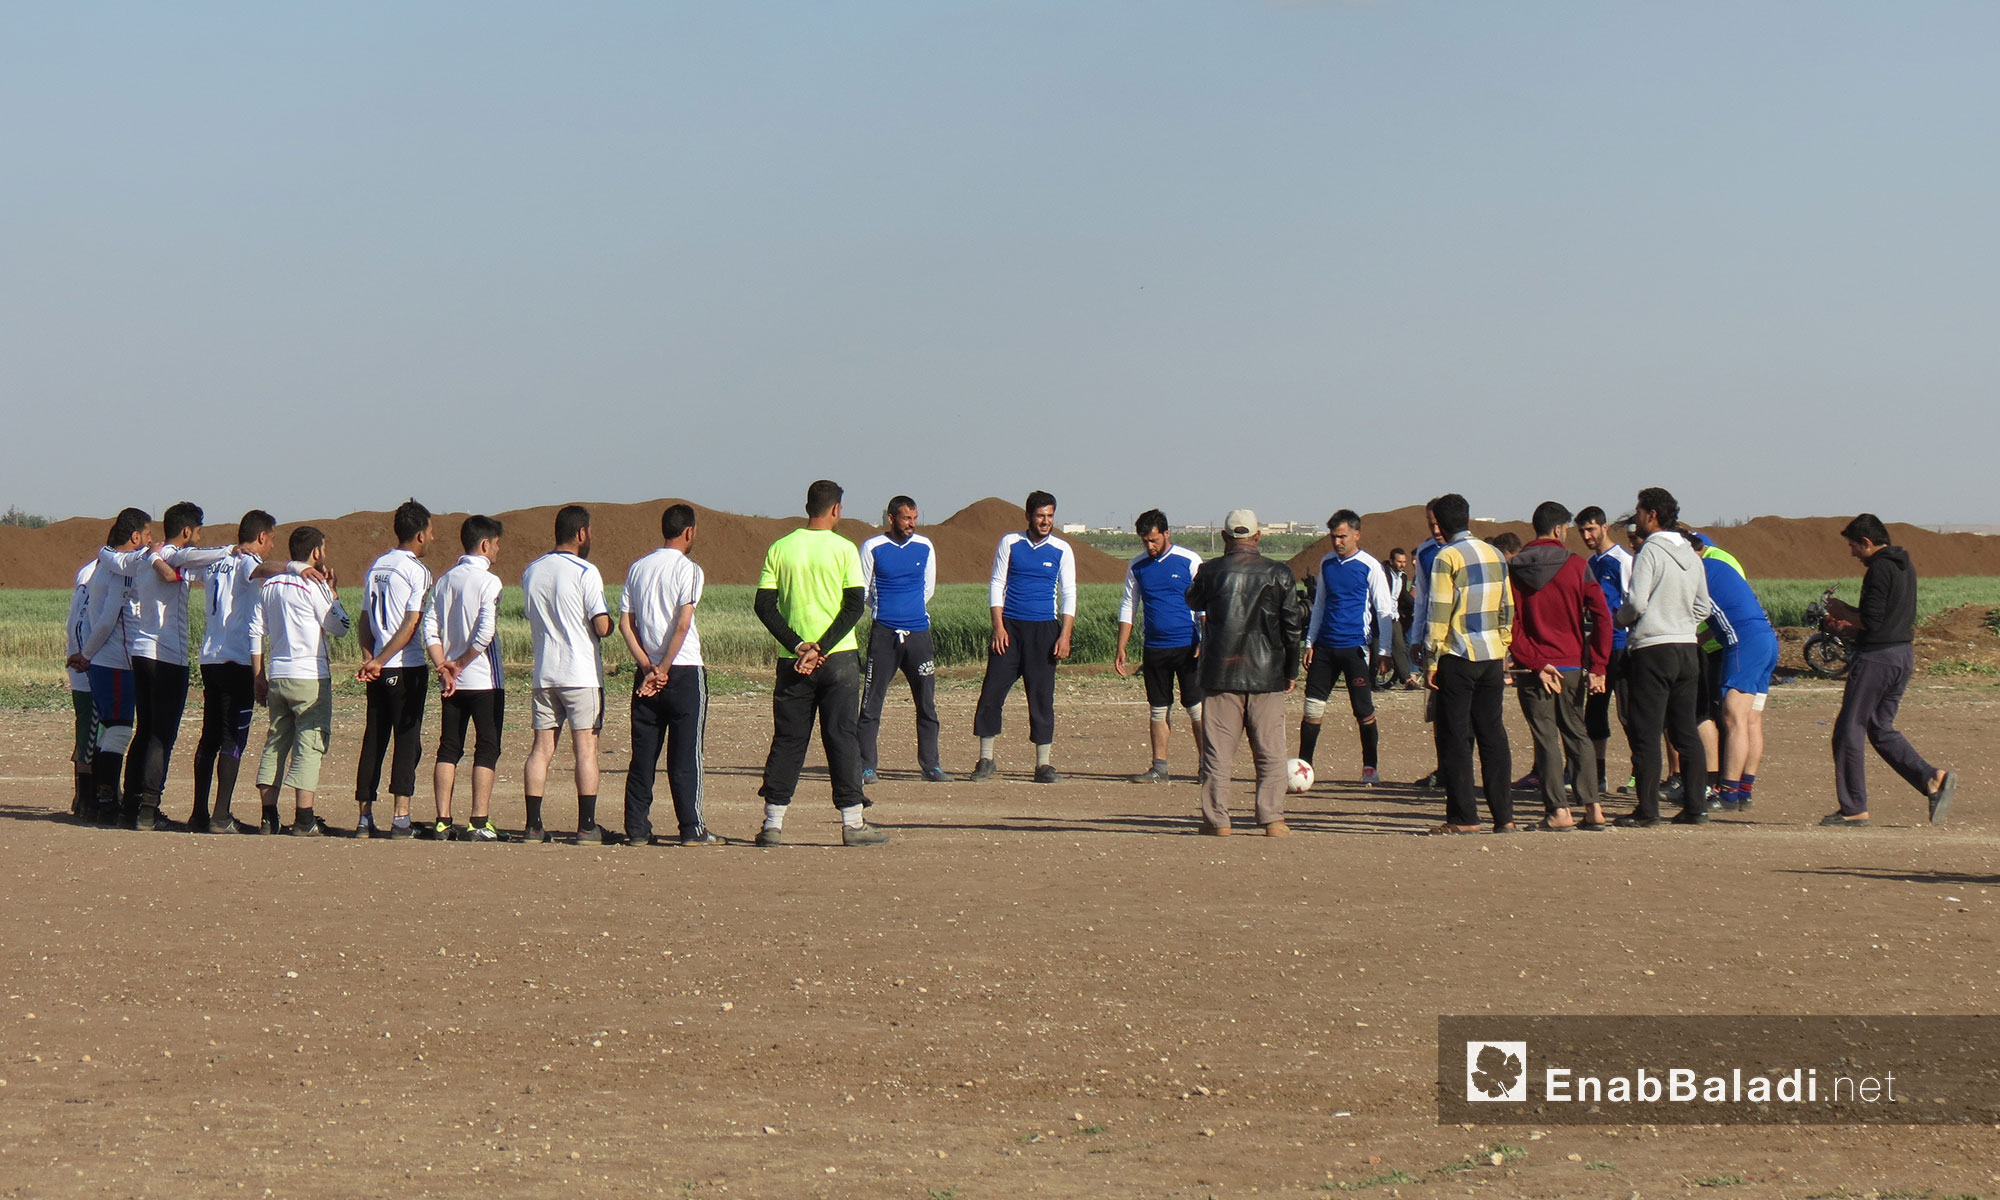 دوري كرة القدم في ملعب دابق بين فريقي دابق ومارع - 8 أيار 2017 (عنب بلدي)